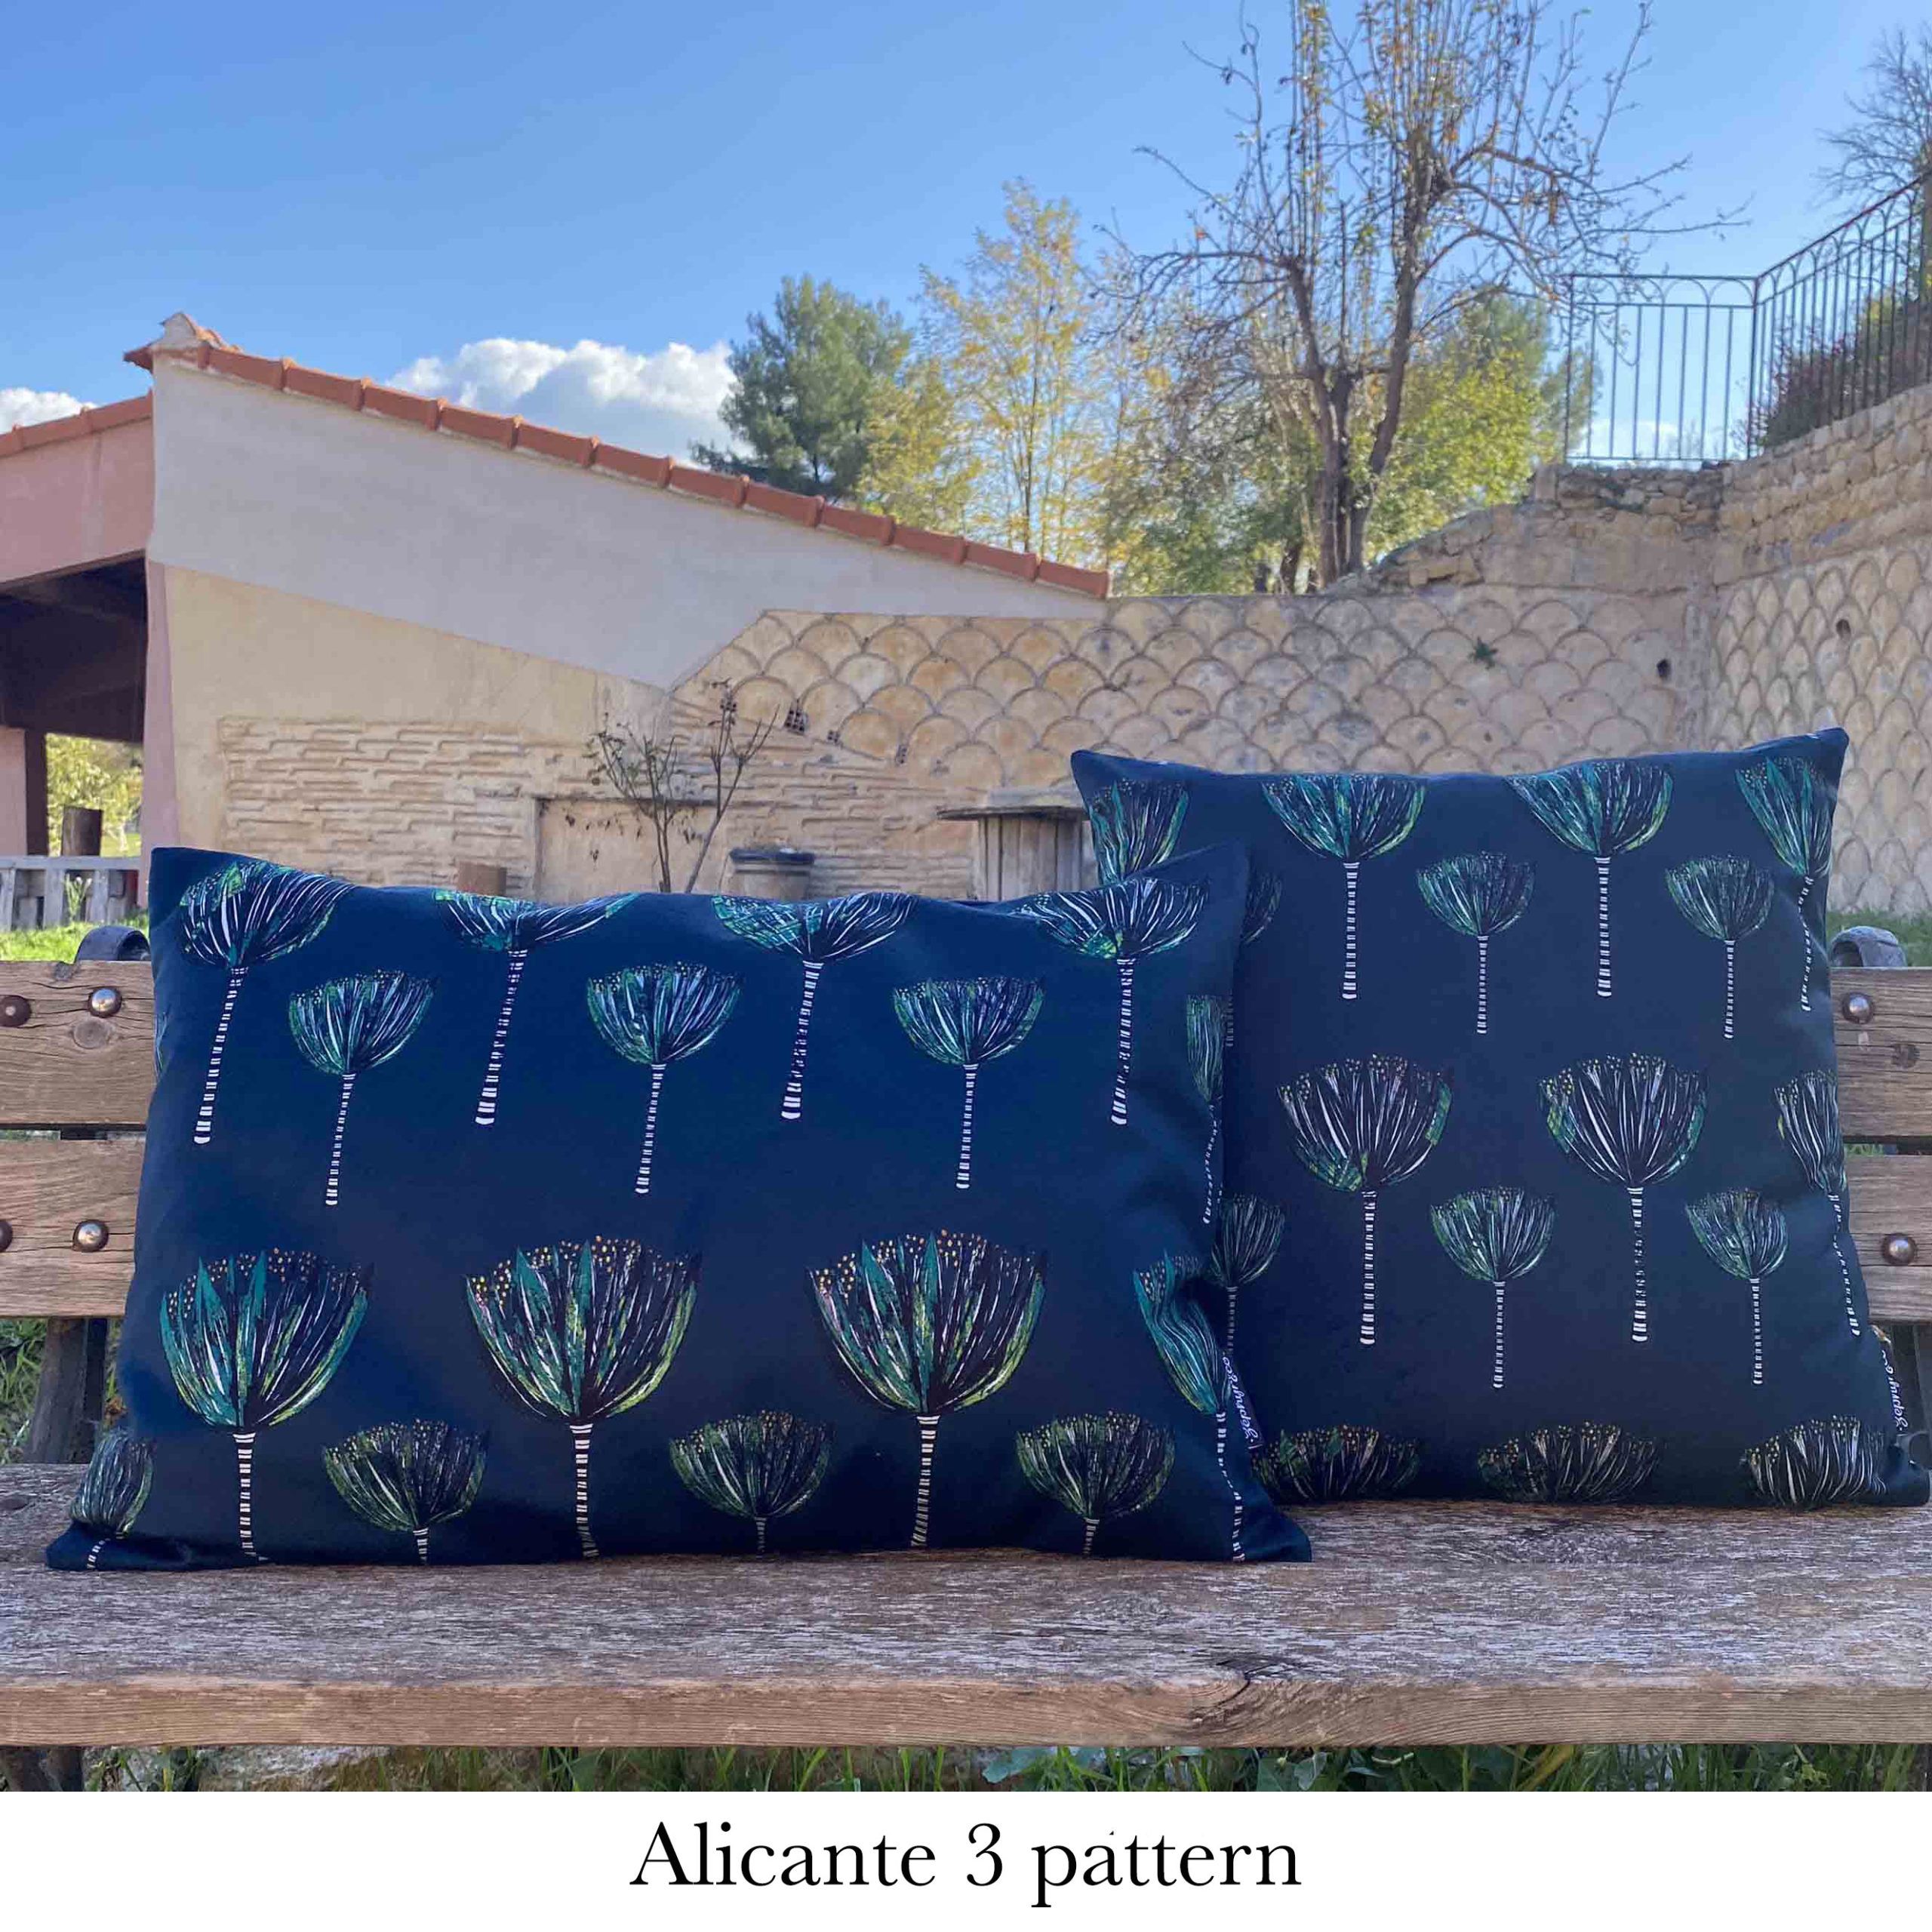 Alicante 3 pattern